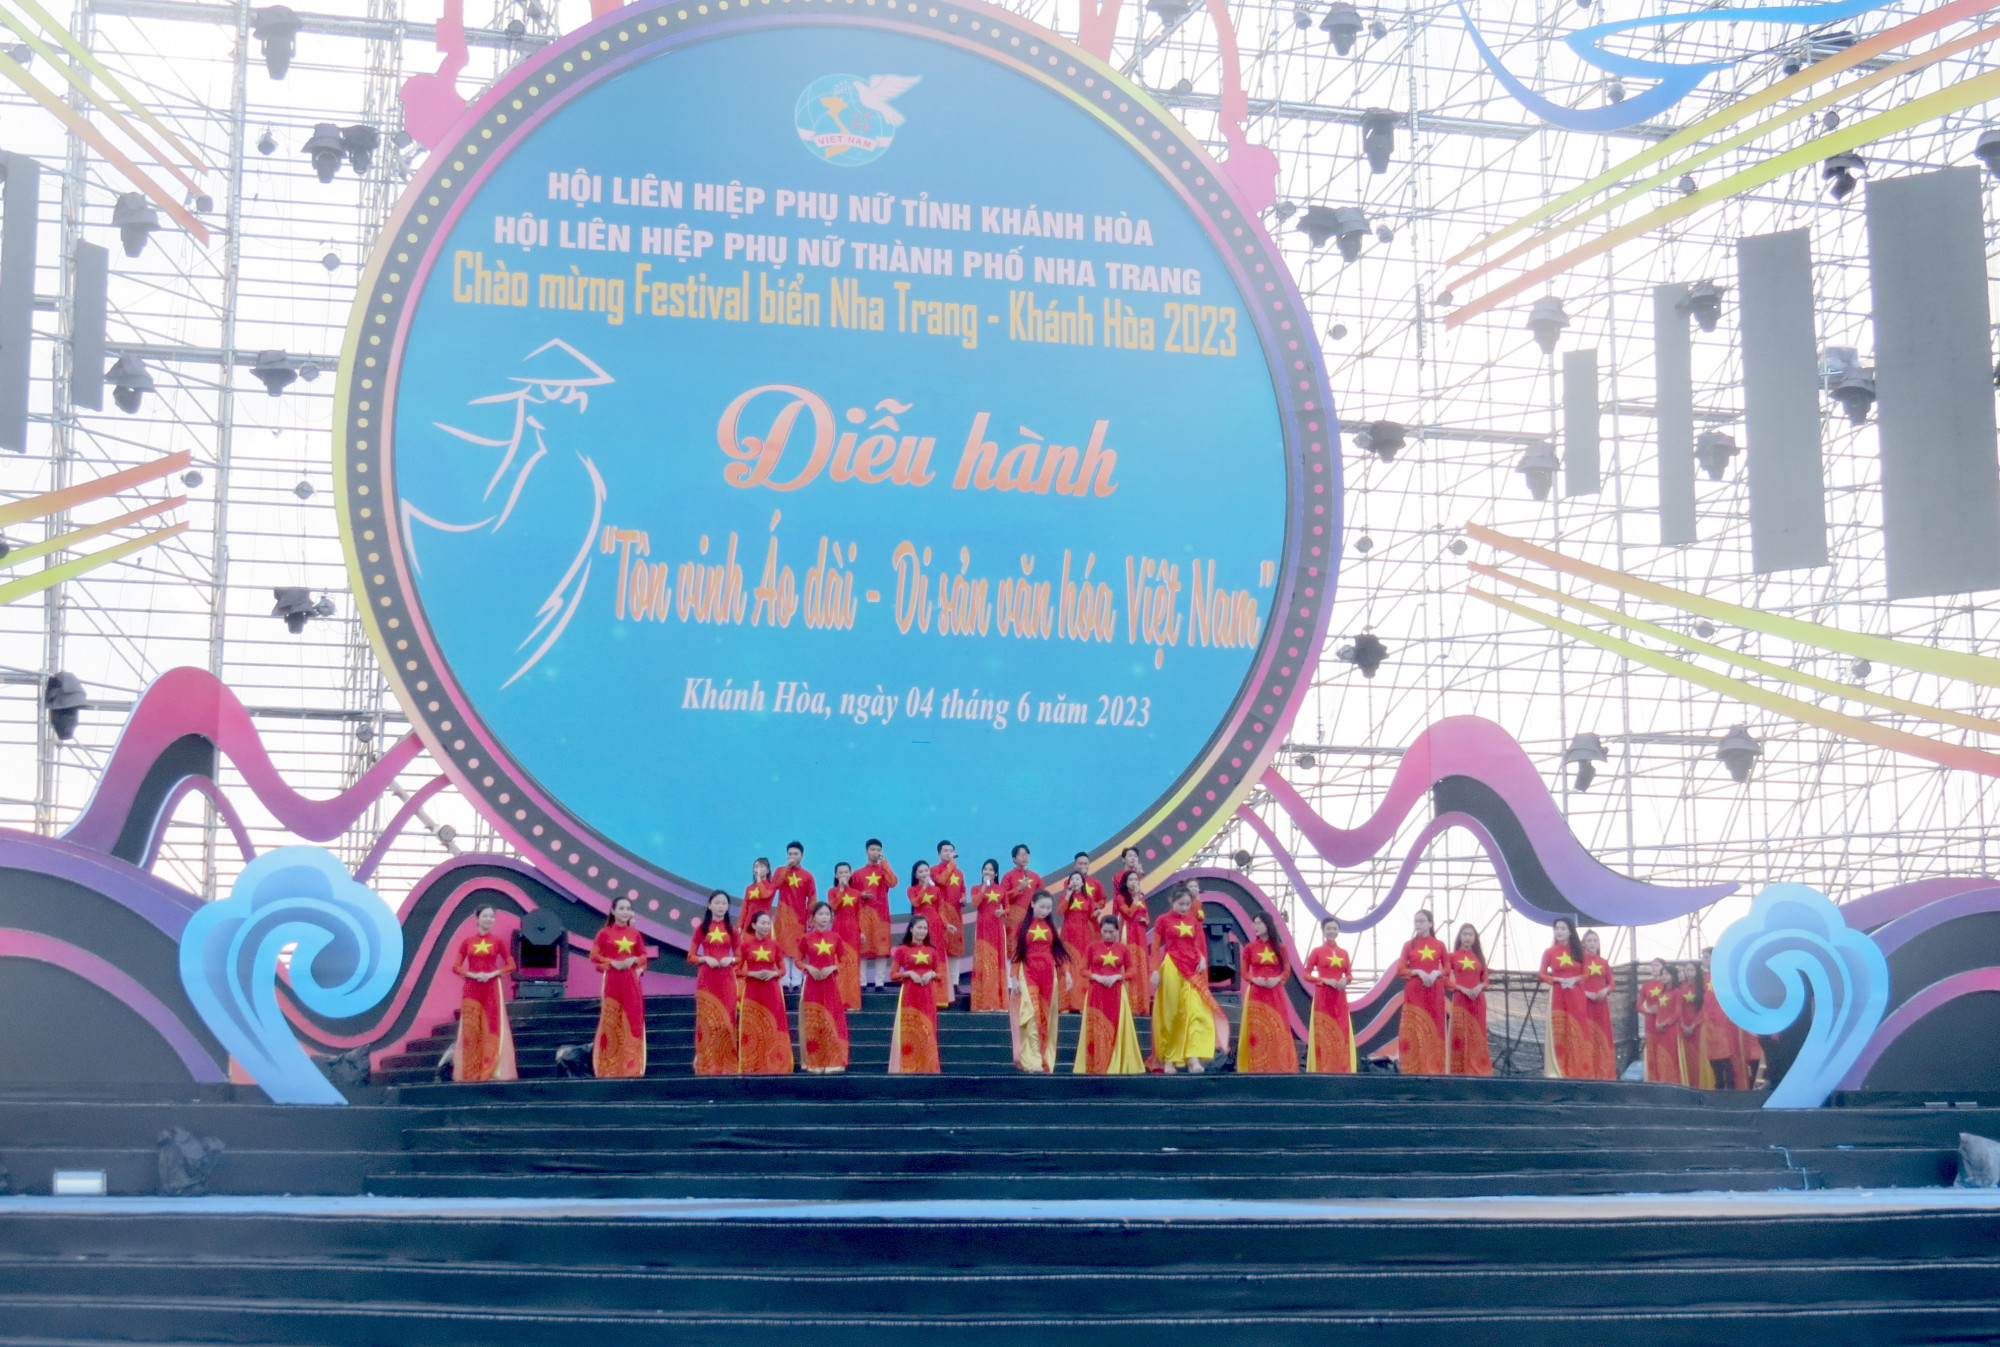 Sáng 4/6, tại Tp.Nha Trang, Hội Liên hiệp Phụ nữ tỉnh Khánh Hòa tổ chức diễu hành “Tôn vinh áo dài – di sản văn hóa Việt Nam”. Đây là một hoạt động trong chương trình Festival Biển Nha Trang – Khánh Hòa 2023